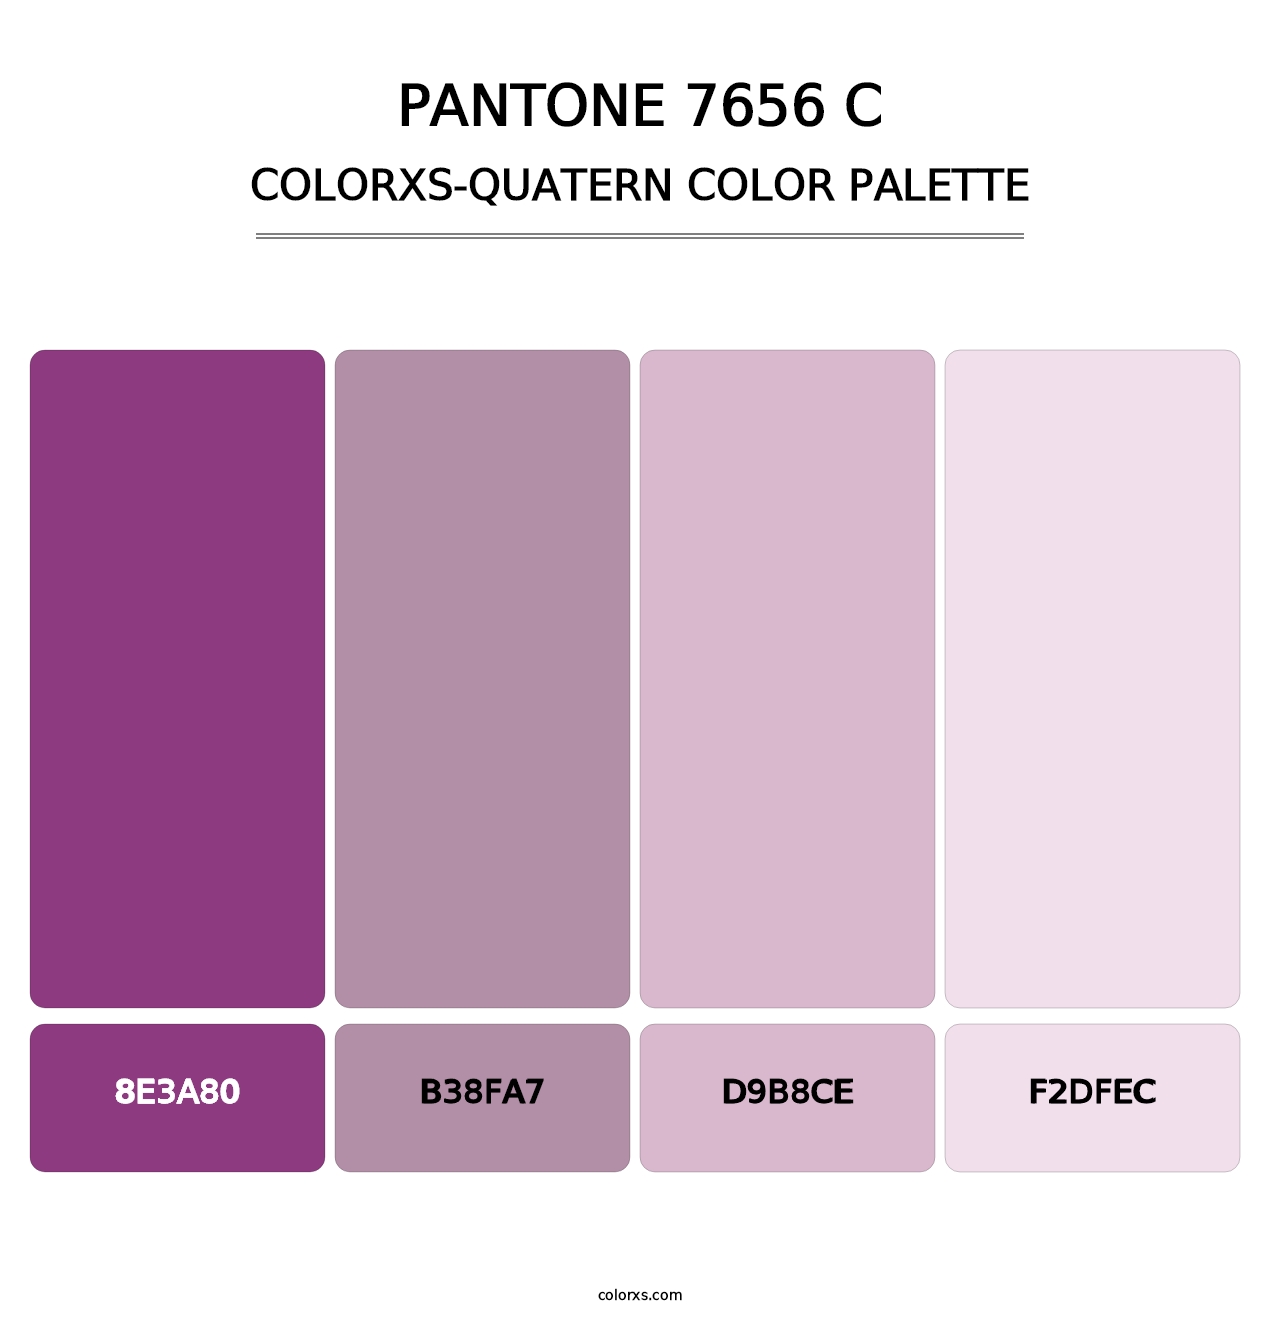 PANTONE 7656 C - Colorxs Quatern Palette